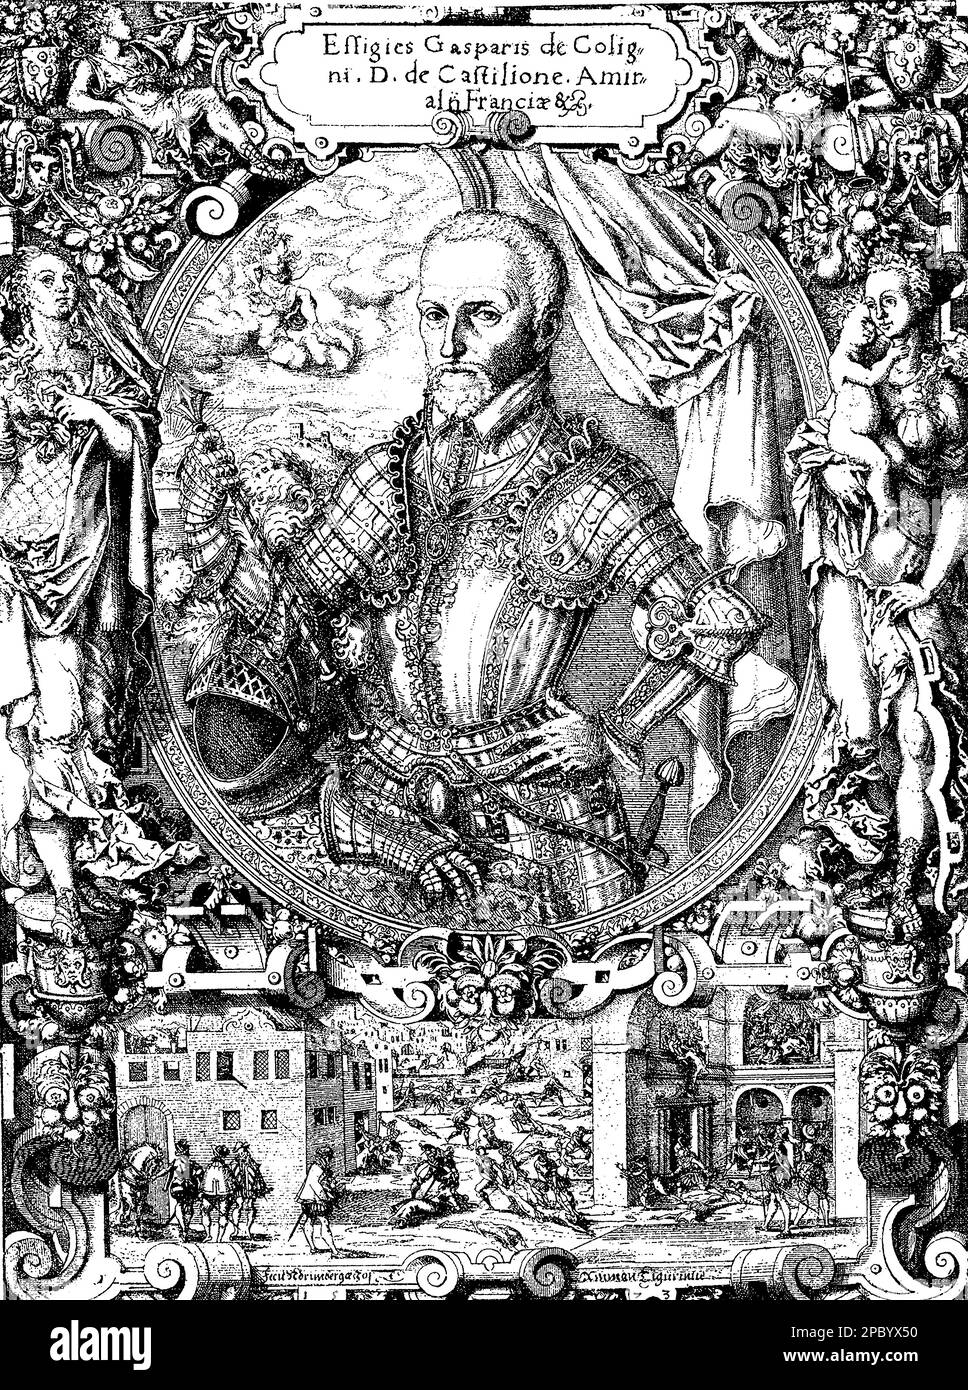 Gaspard de Coligny war ein französischer Admiral aus dem 16. Jahrhundert, der eine Schlüsselrolle in den französischen Religionskriegen spielte. Er war Hugenottenführer und Verfechter religiöser Toleranz, wurde aber letztendlich während des St. Bartholomäus-Massaker Stockfoto